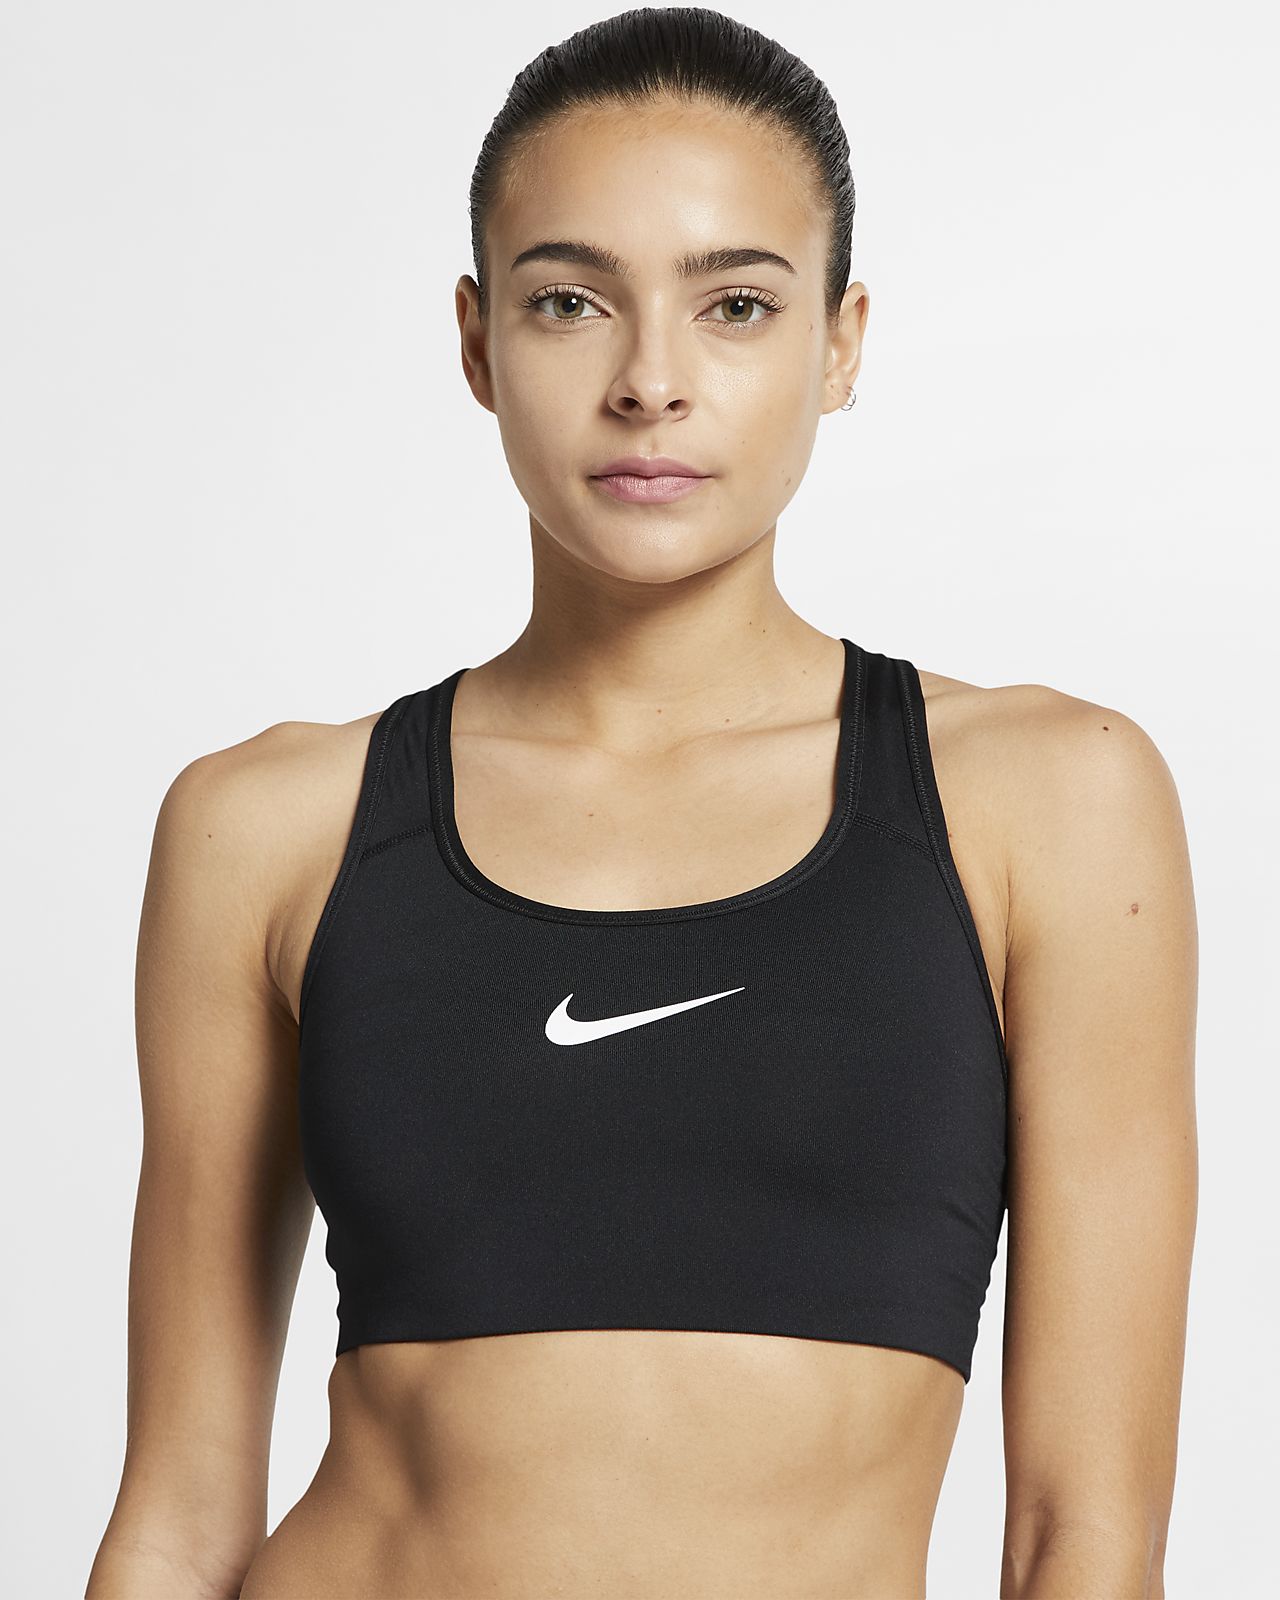 Medium-Support Sports Bra. Nike IL